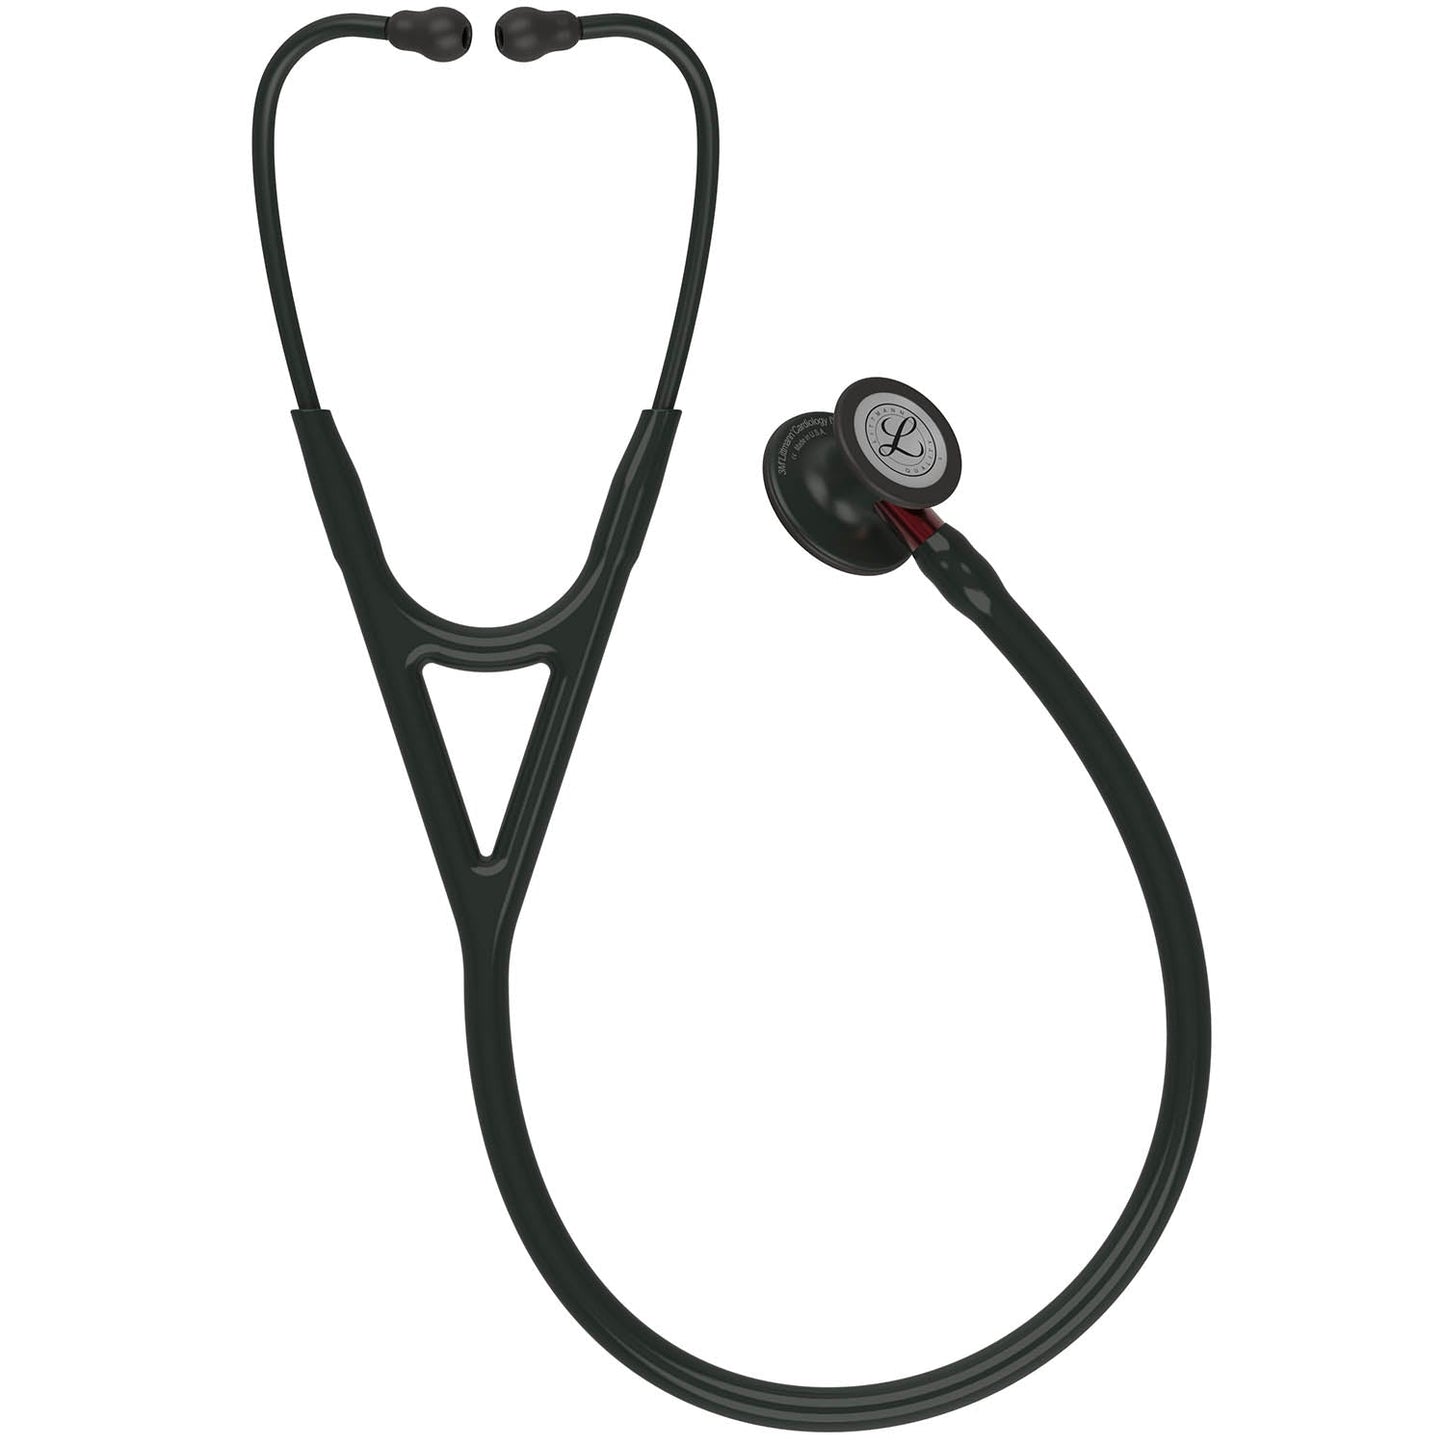 Stetoskopju Dijanjostiku Littmann Cardiology IV: Iswed u Iswed - Zokk Aħmar 6200